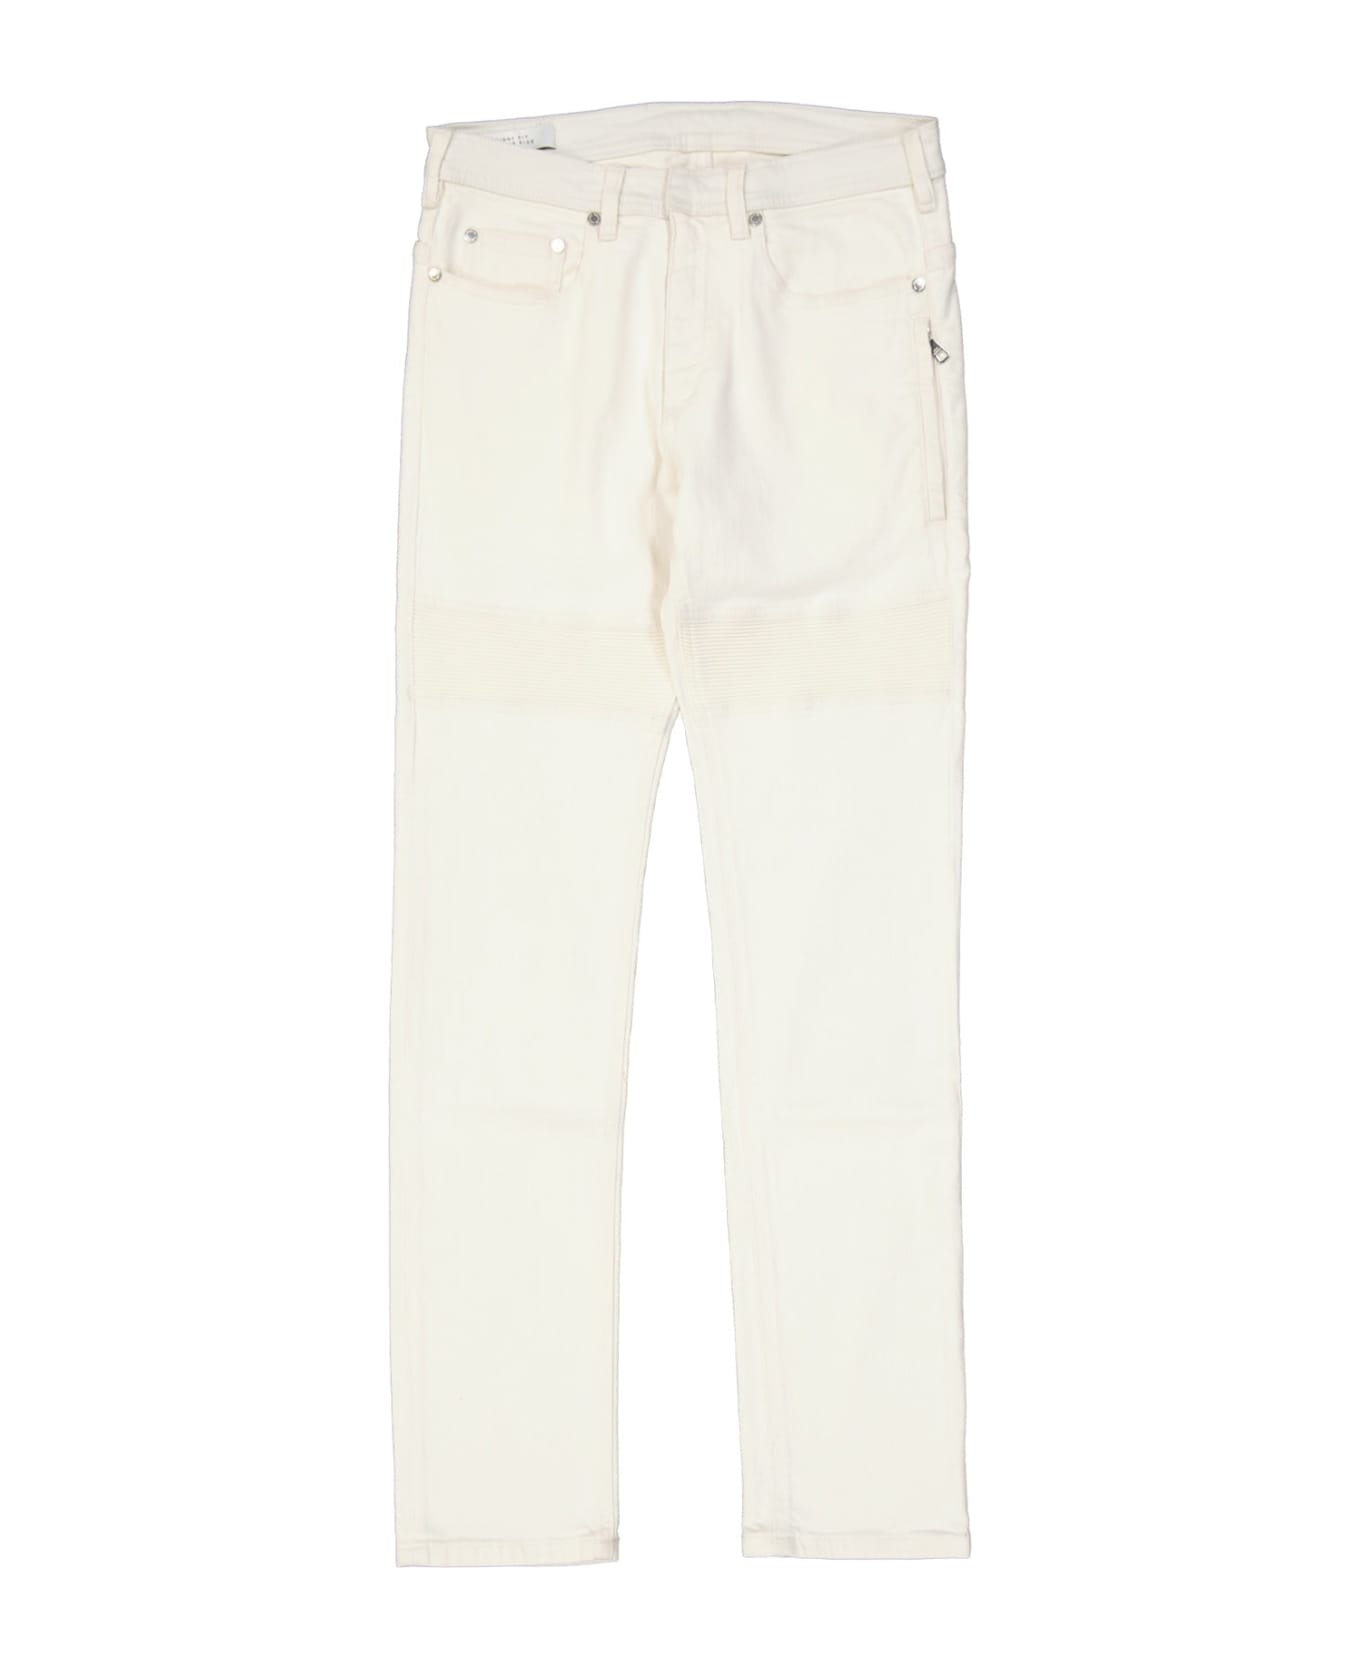 Neil Barrett Neil Barret Jeans - White